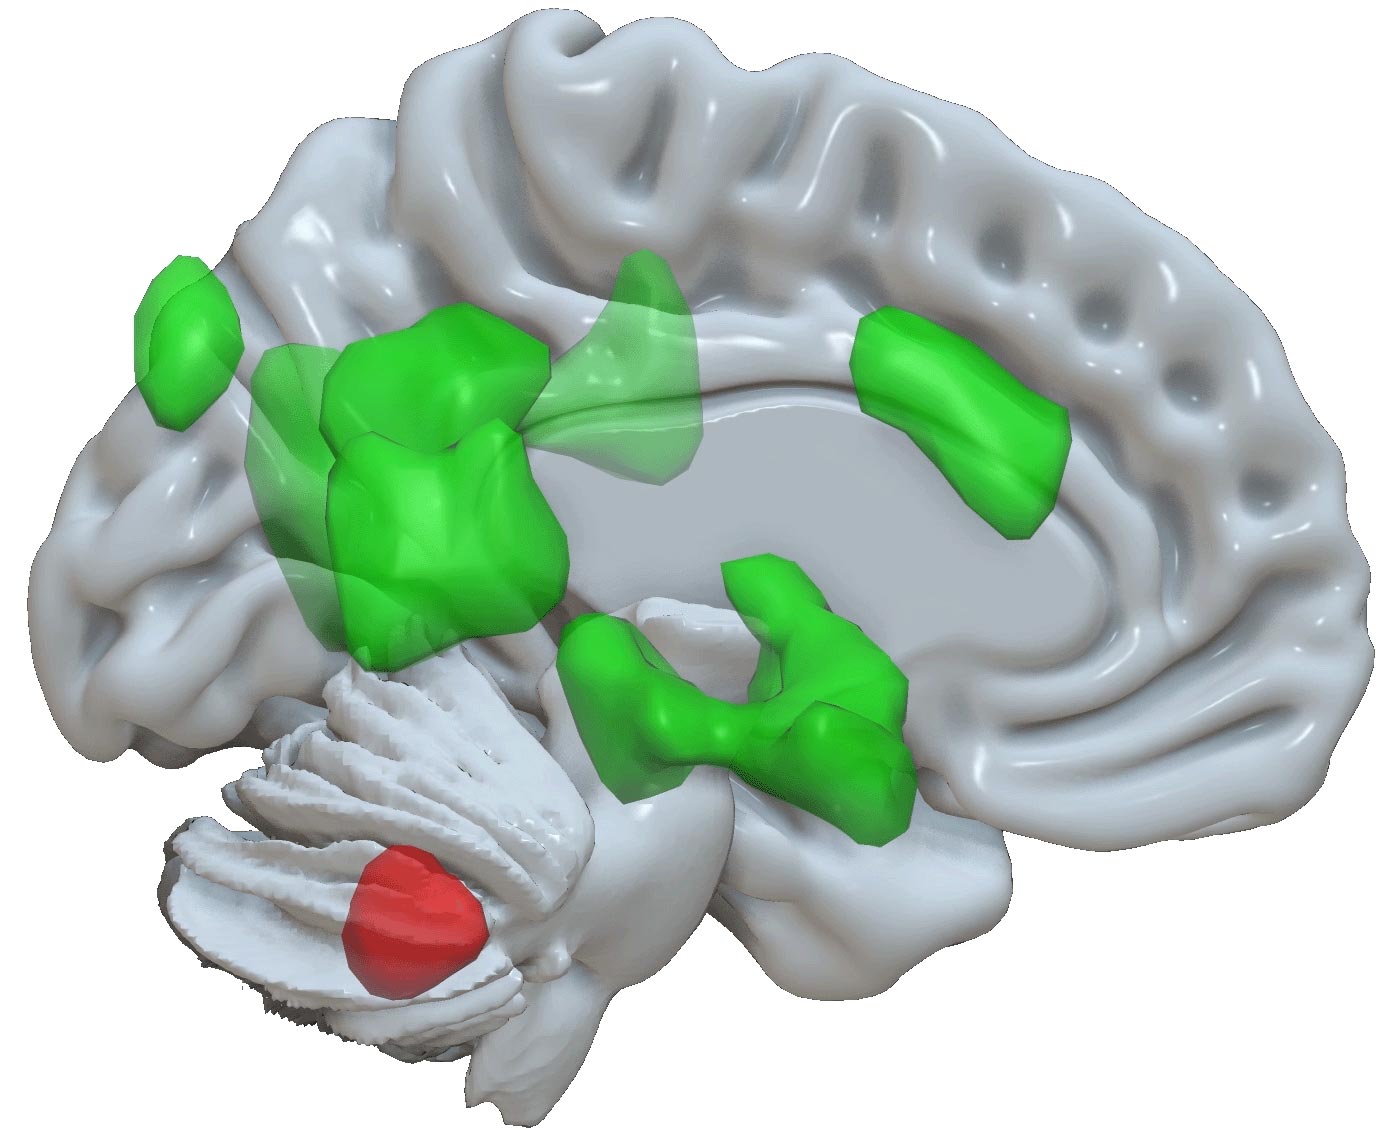 Neuronaukowcy odkrywają nową funkcję móżdżku: pamięć emocjonalną